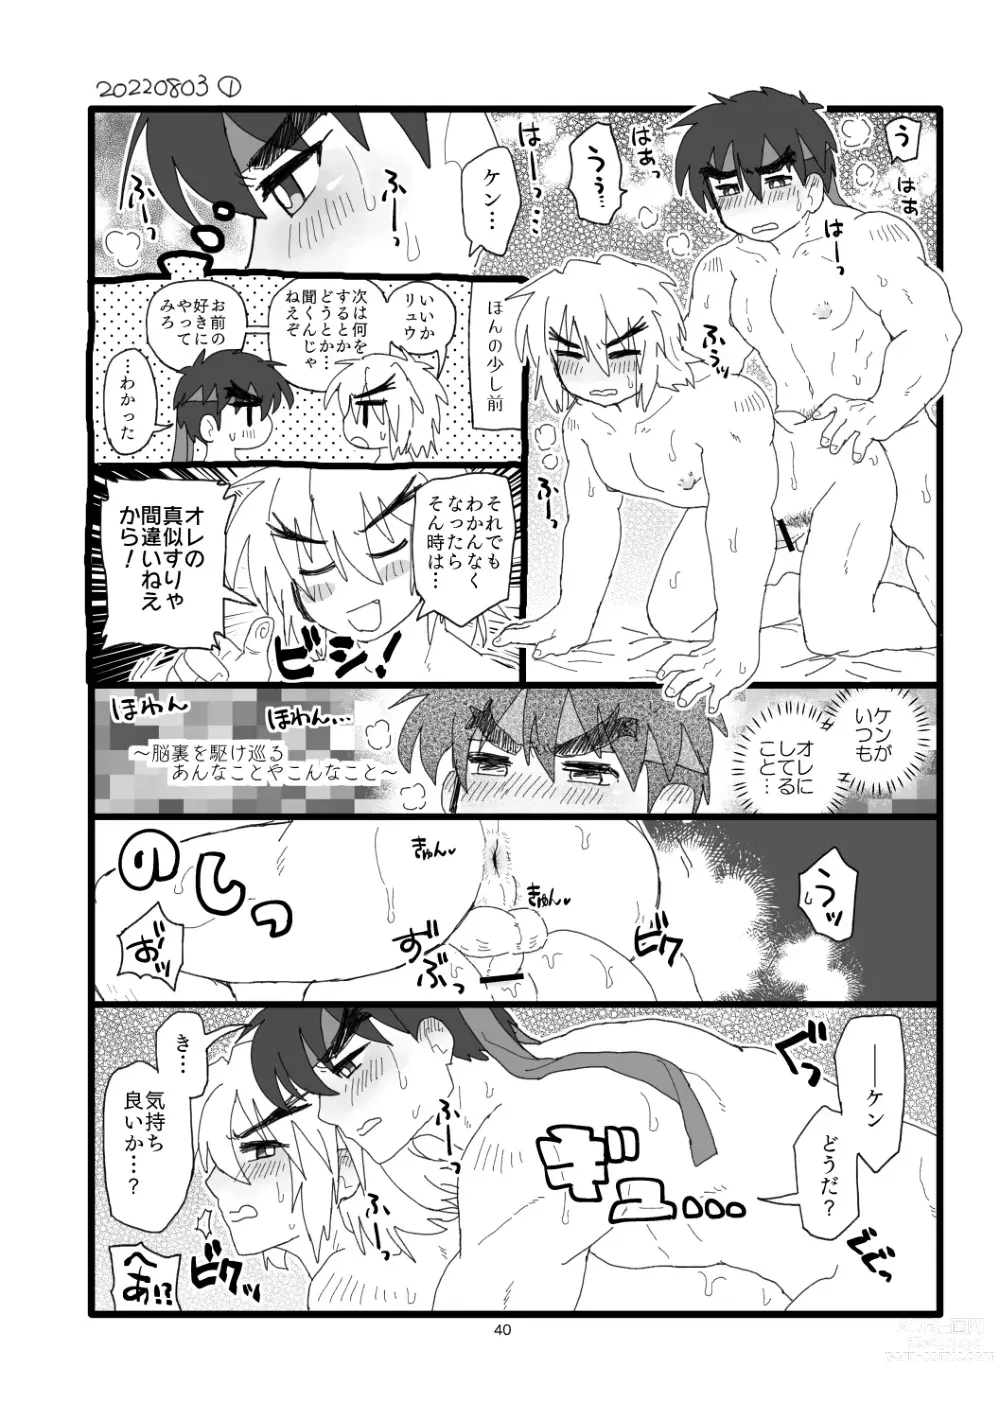 Page 39 of doujinshi Kobushi Kiss